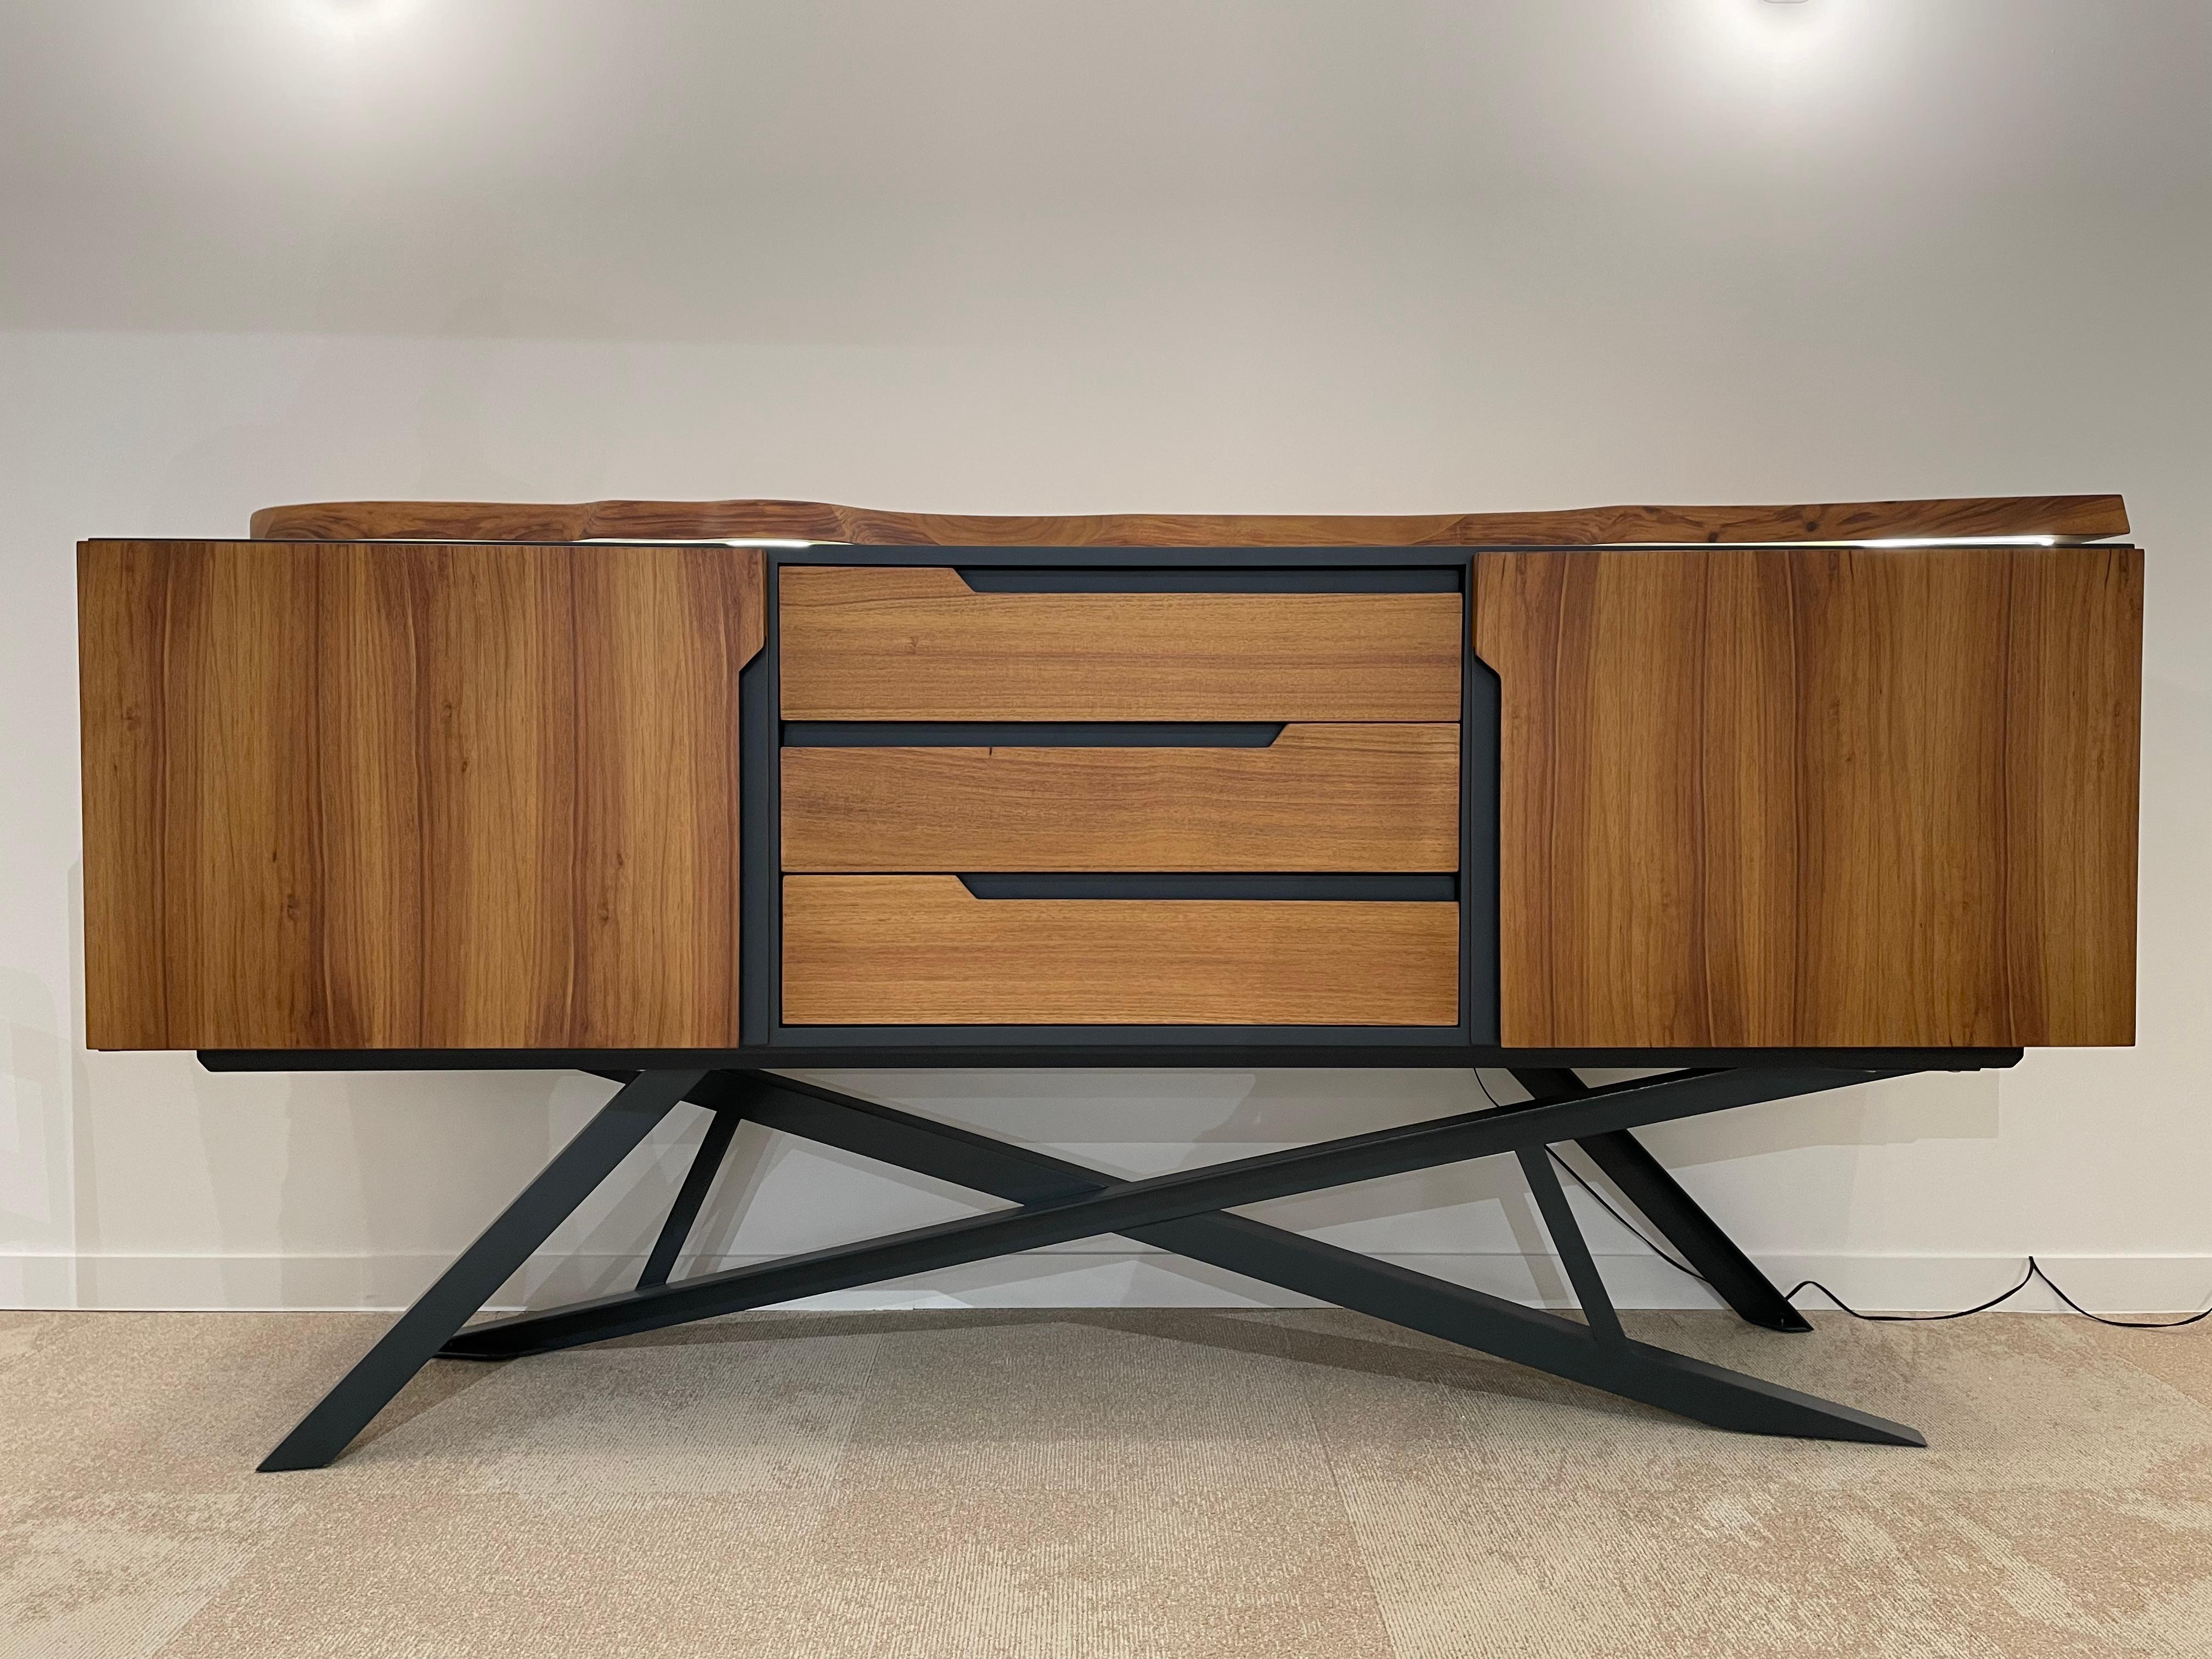 1950er Design und MCM-Stil Holz und Metall Sideboard mit beleuchteten oben in hoher Qualität Handwerkskunst und vollständig anpassbar in Größen, Farbe, Holz.